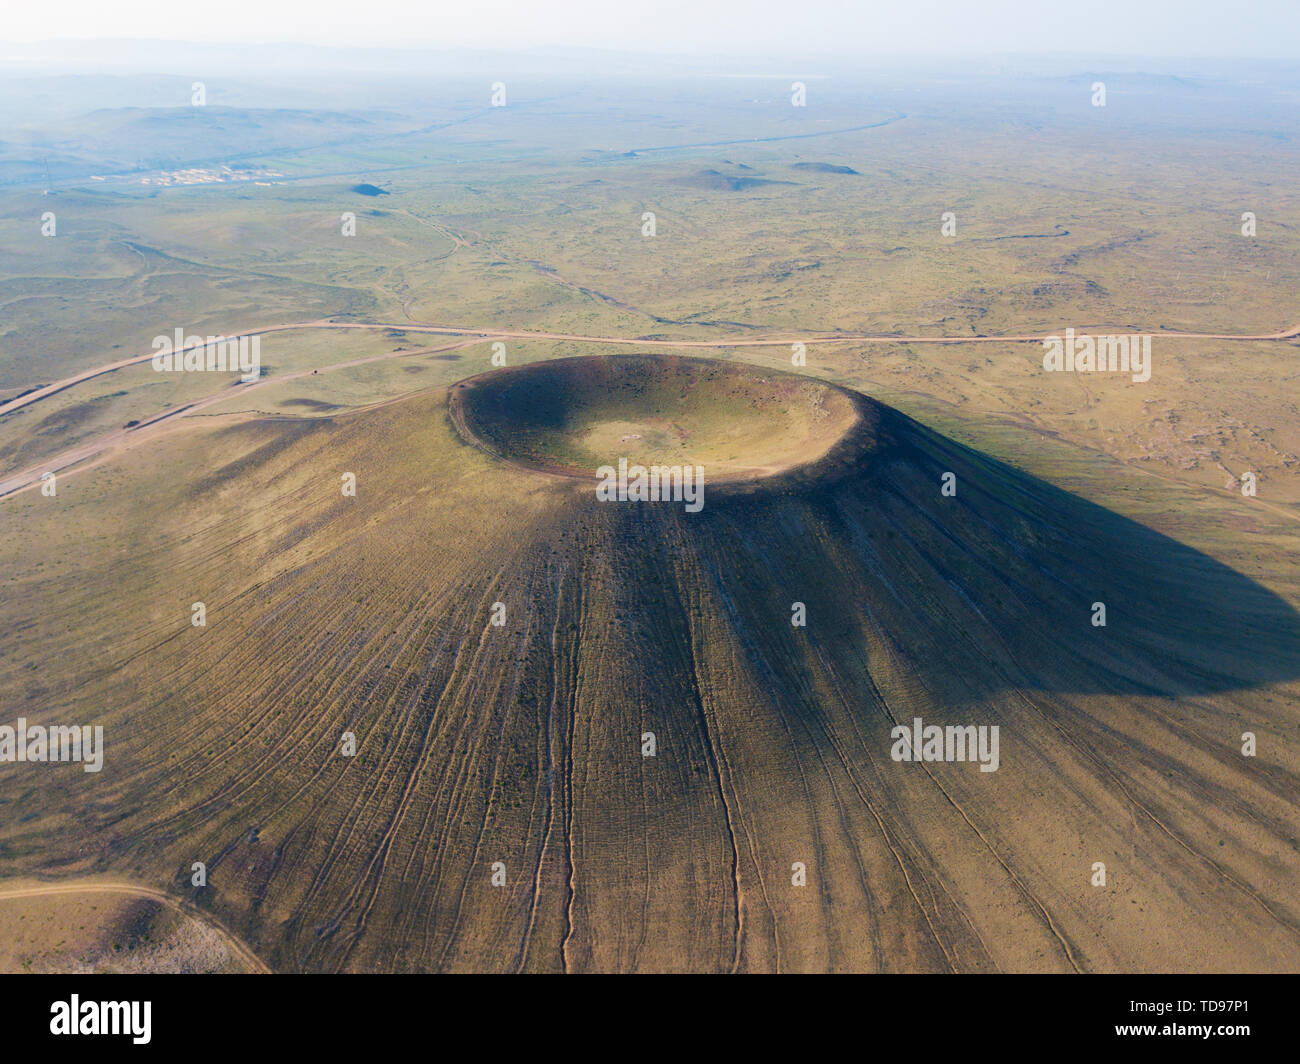 Die innere Mongolei Chahar Vulkan hat insgesamt mehr als 20, ist eine seltene Erbe der Vulkane in China, und die Schönsten ring Krater ist nur ein gut erhalten. Da rock Schlacke ist ein sehr gutes Baumaterial, viele Vulkane wurden künstlich in den letzten Jahren zerstört, was sehr bedauerlich ist. Stockfoto